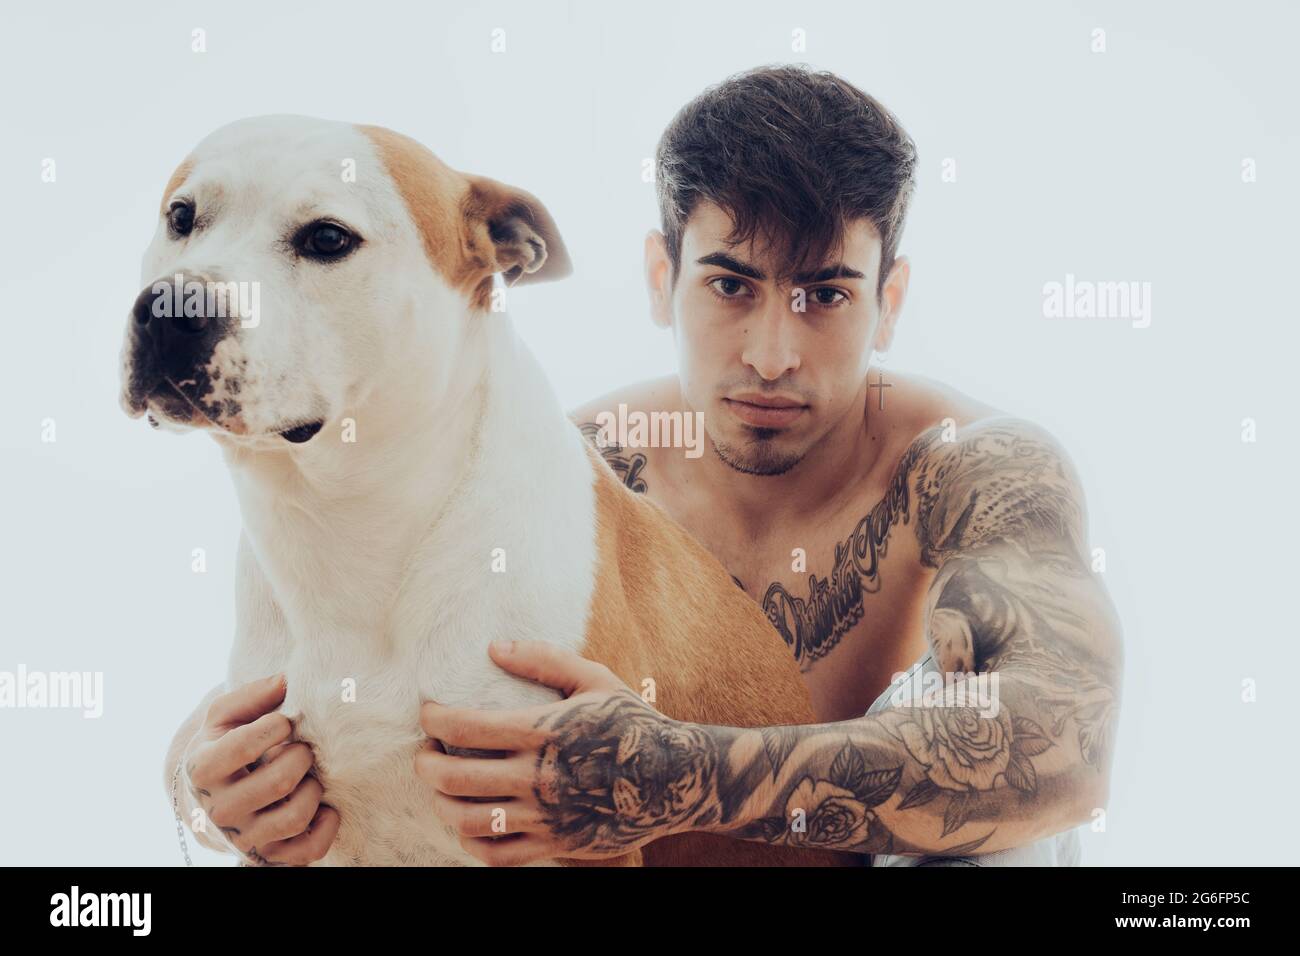 Portrait d'un jeune homme avec des tatouages et un chien Banque D'Images